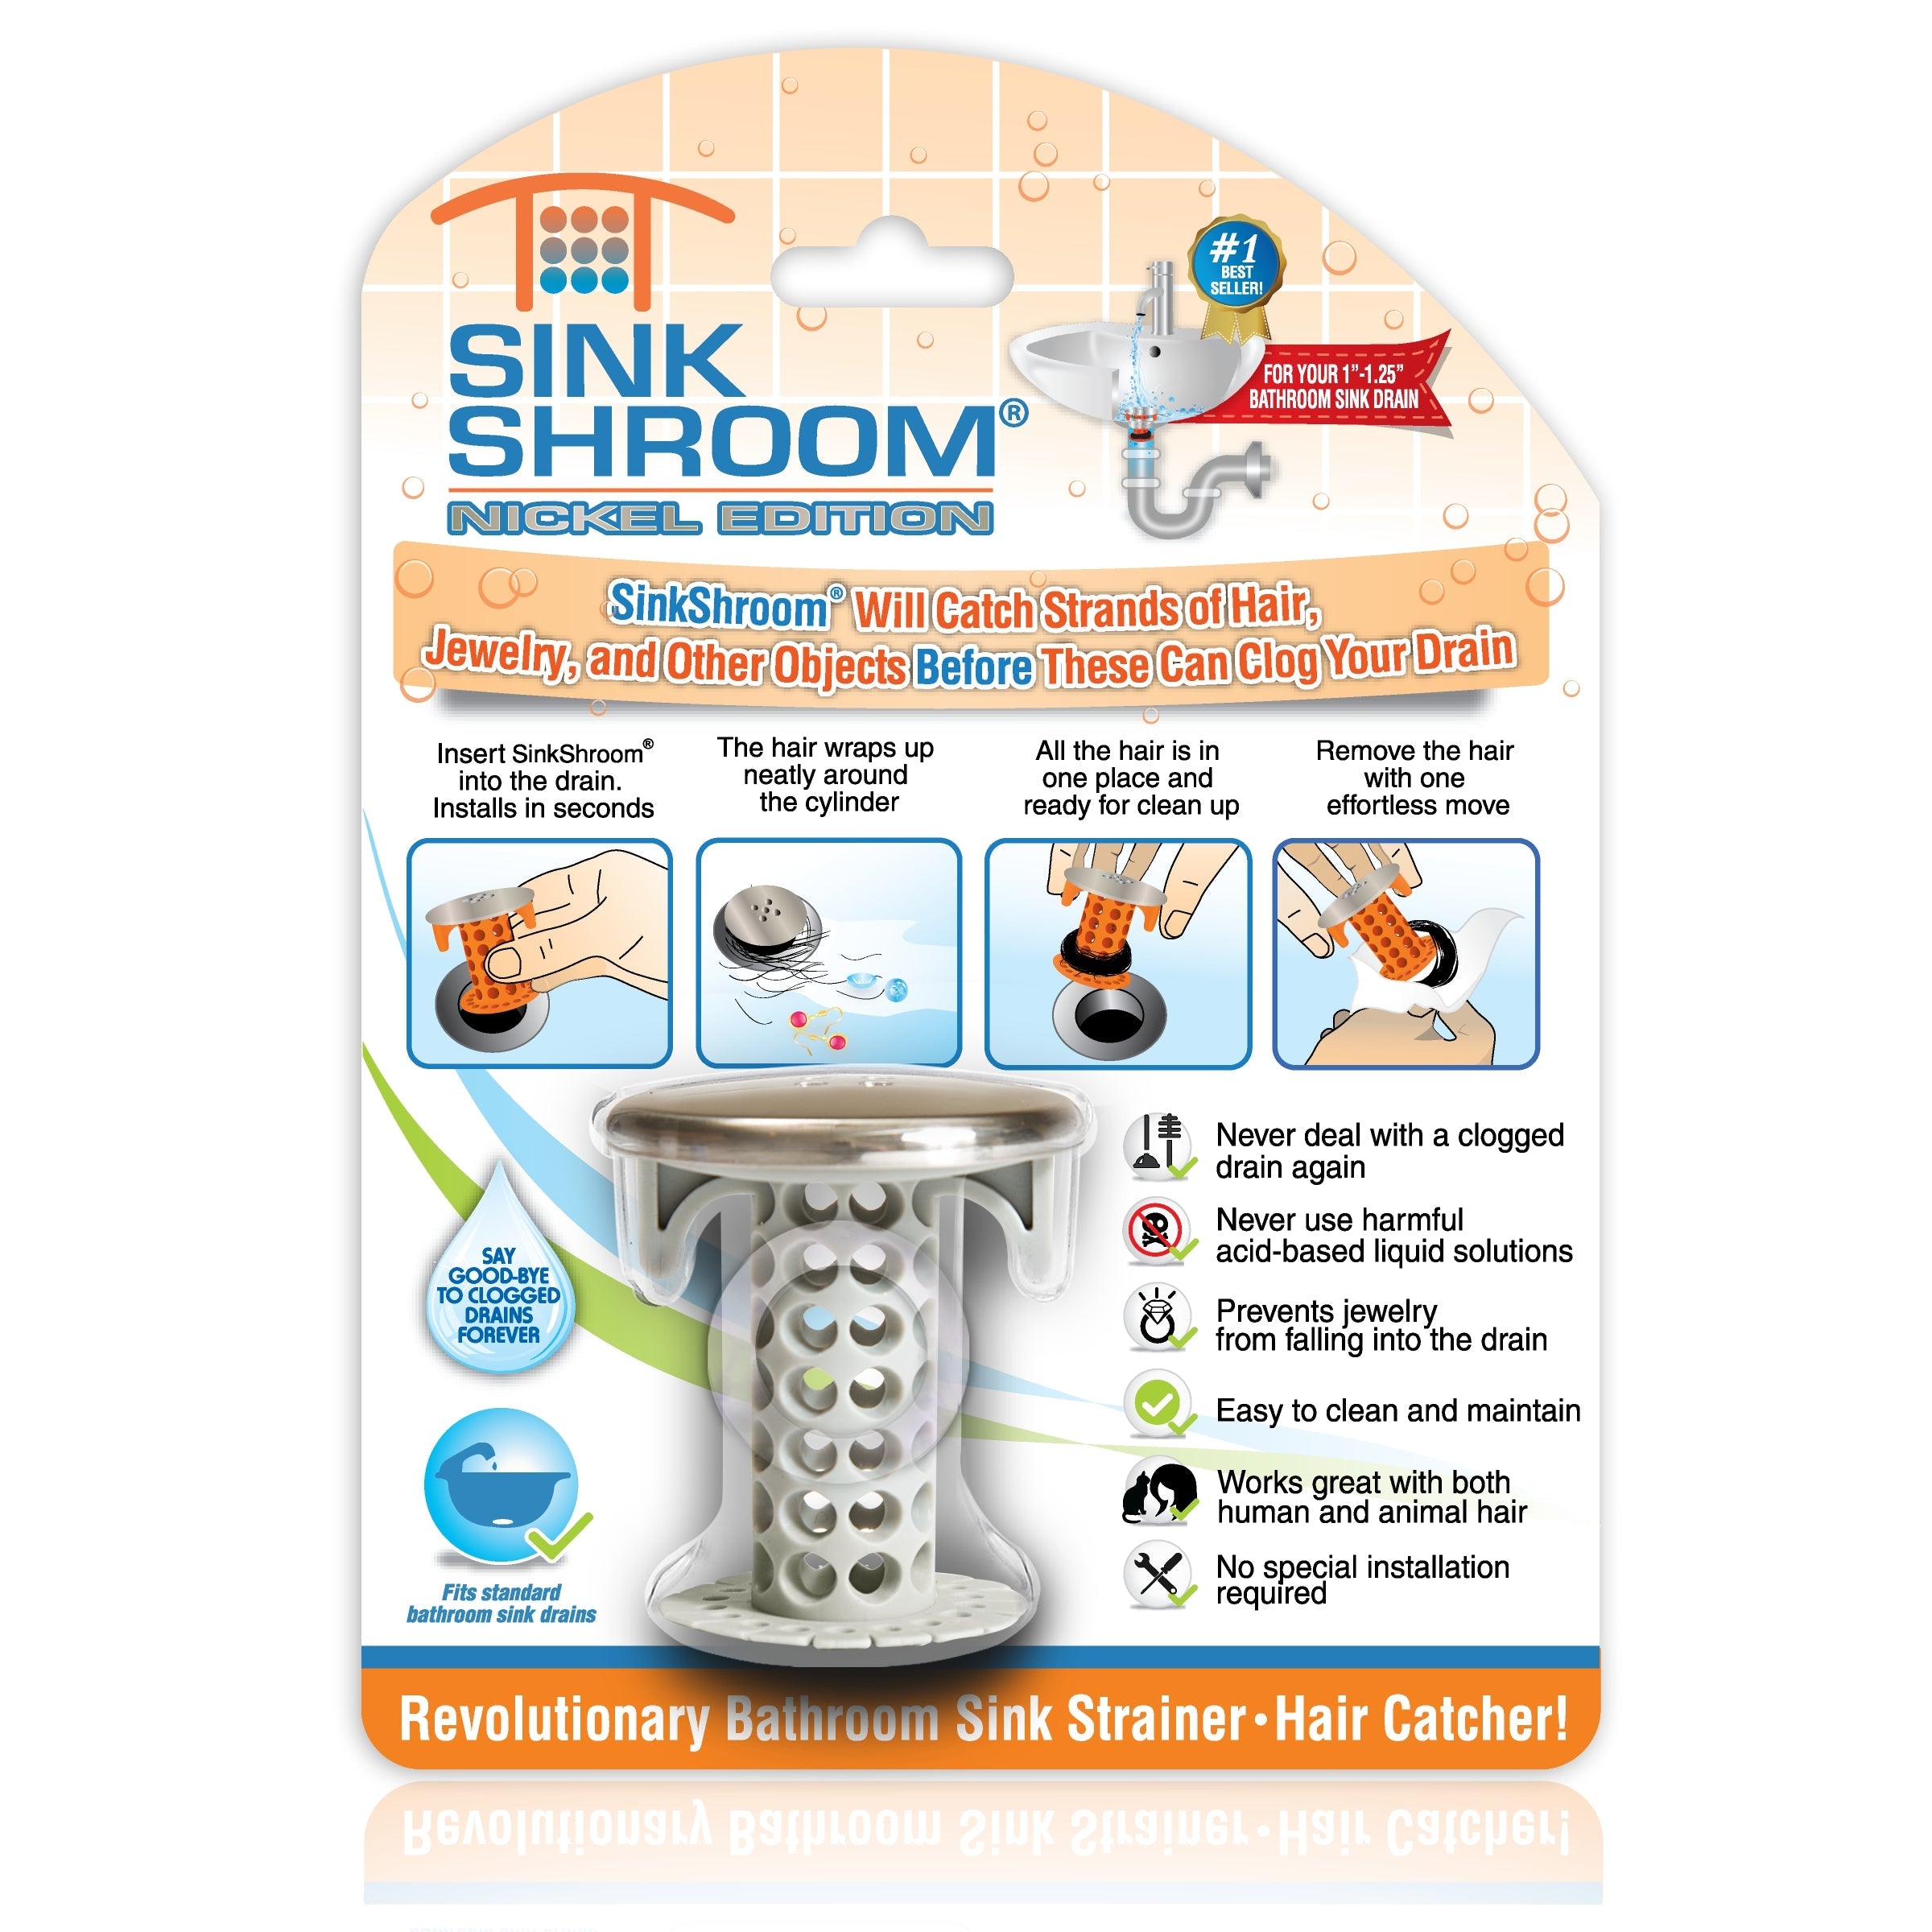 TubShroom Chrome Edition Revolutionary Hair Catcher Tub Drain Protector